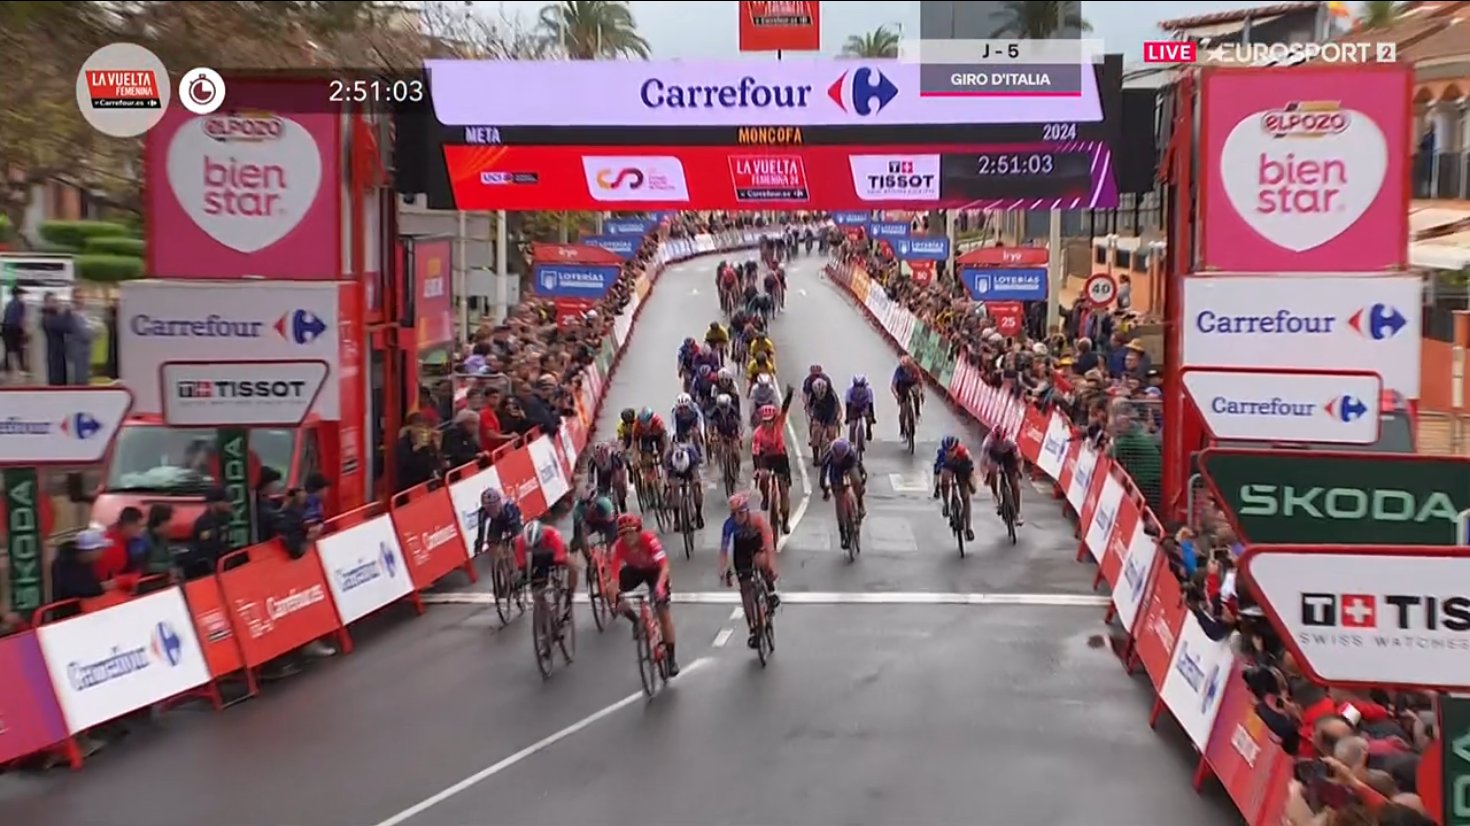 Classement de la 2ème étape de la Vuelta Femenina, remportée par Alison Jackson